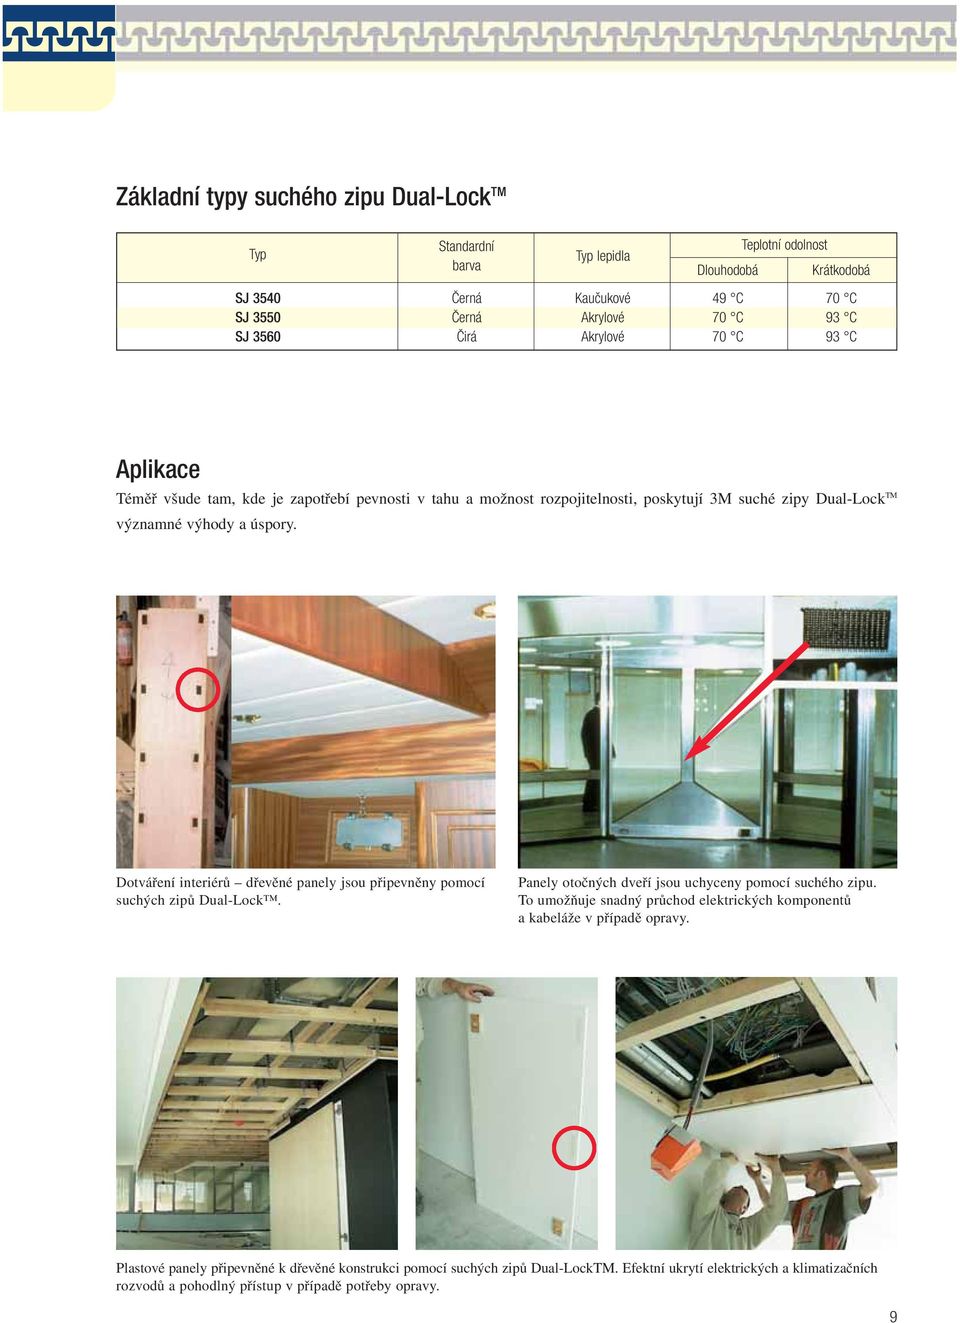 Dotváření interiérů dřevěné panely jsou připevněny pomocí suchých zipů Dual-Lock. Panely otočných dveří jsou uchyceny pomocí suchého zipu.